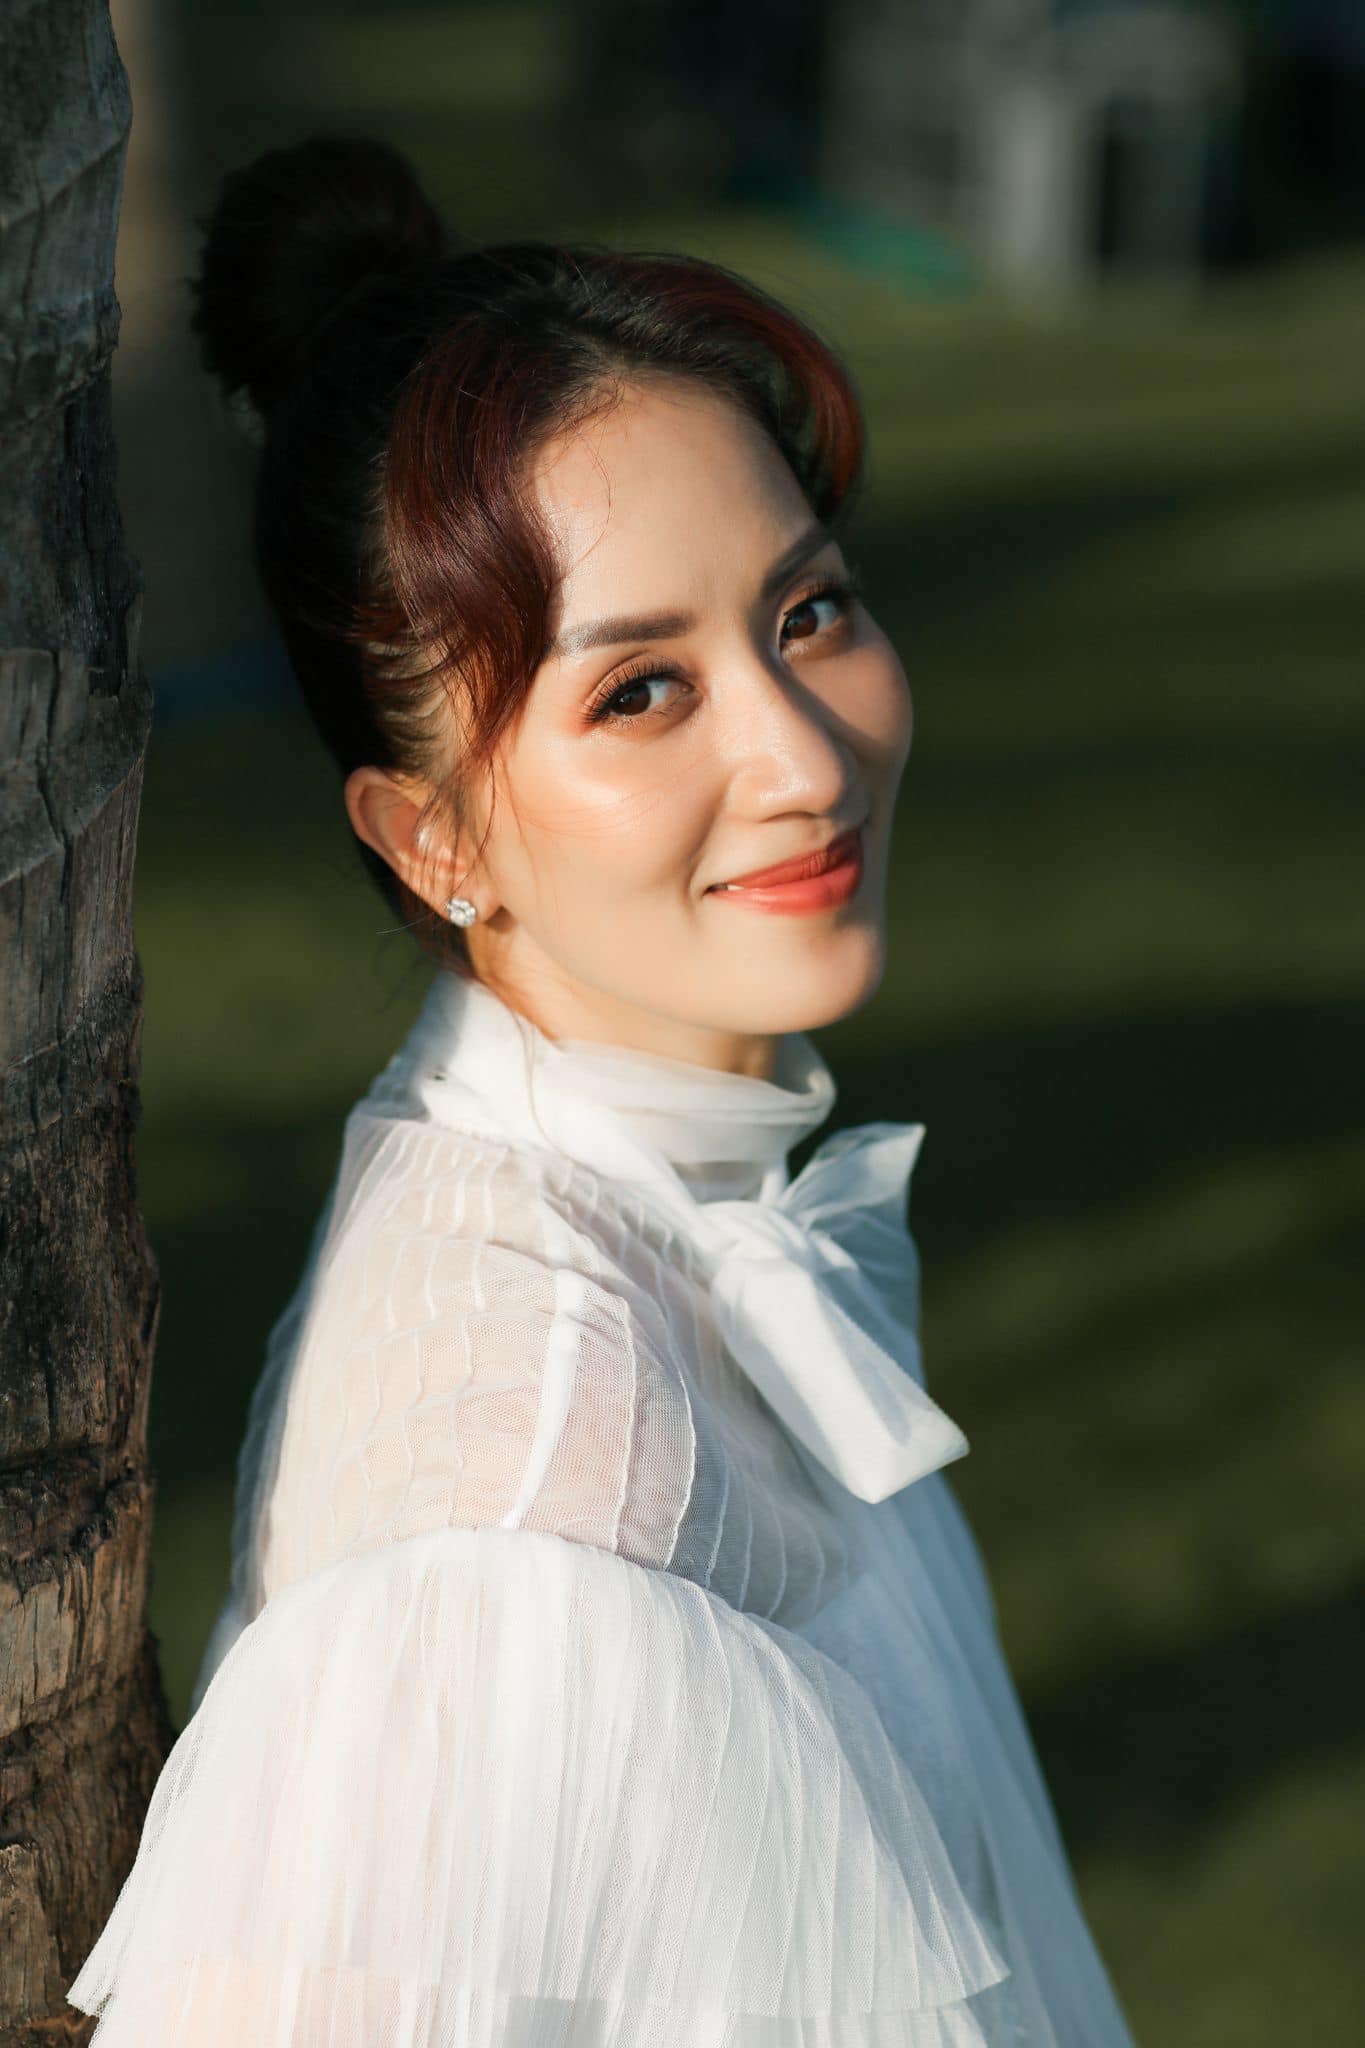 Khánh Thi là một vũ công chuyên nghiệp và rất nổi tiếng trong làng dancesport (khiêu vũ thể thao) Việt Nam. 